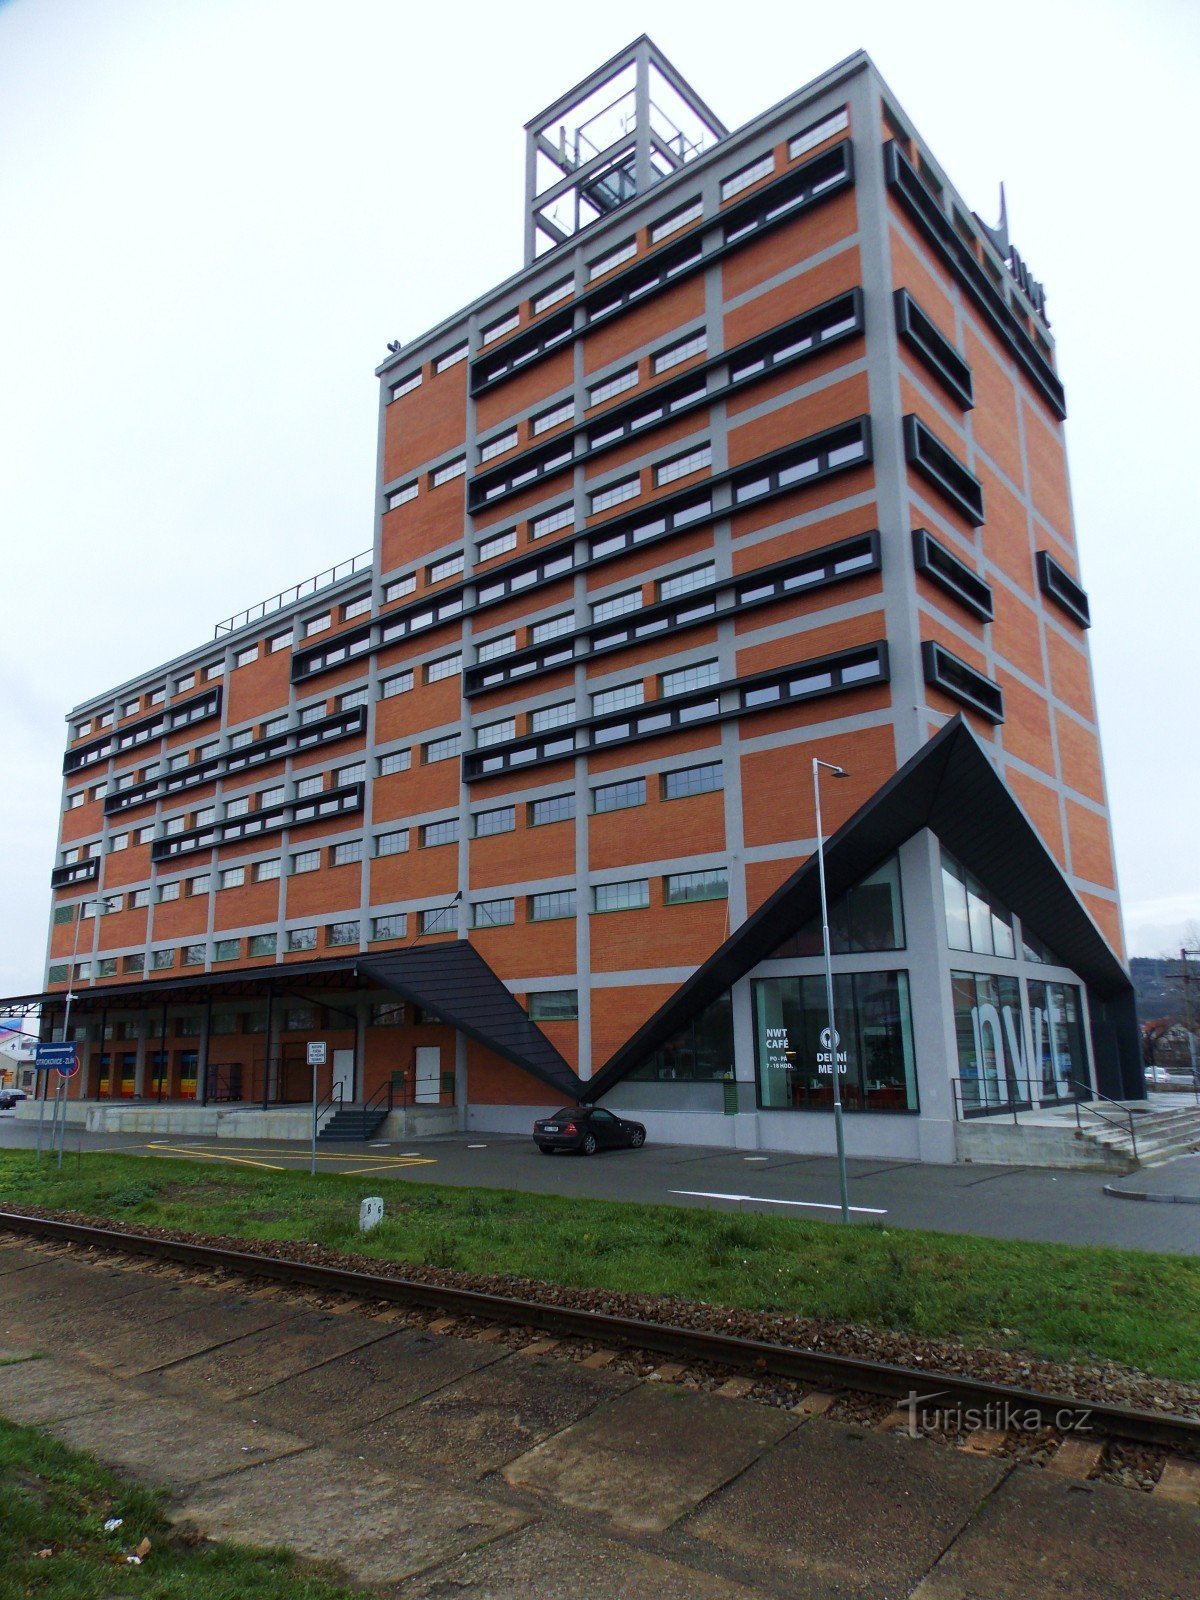 Edificio NWT a Zlín, Prštné